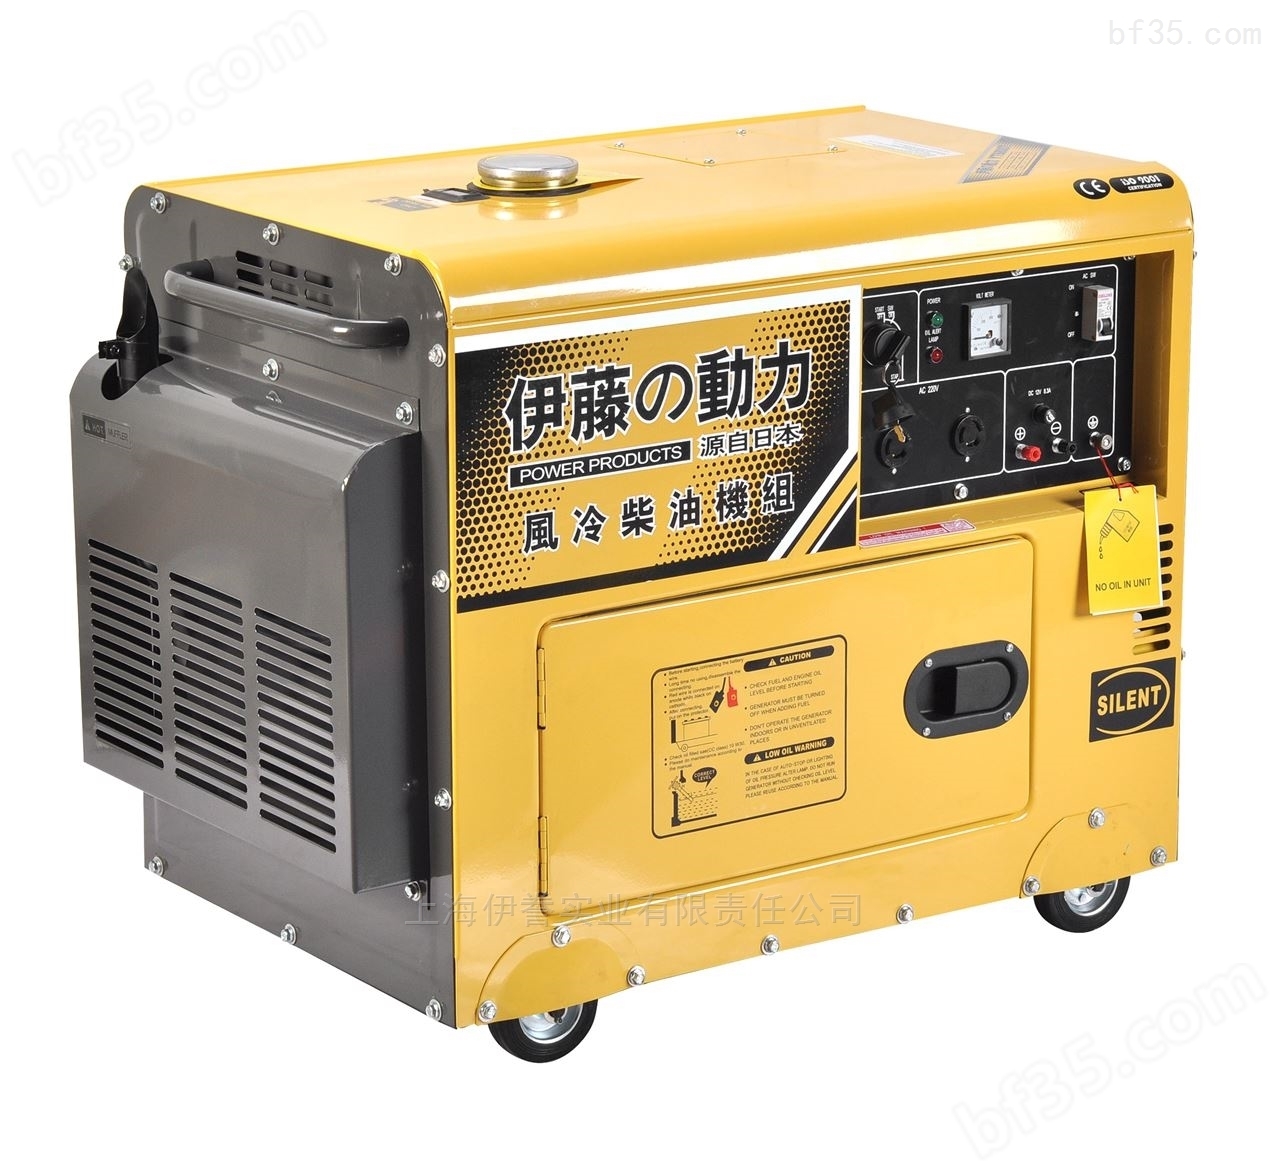 伊藤YT6800T-ATS自启动发电机型号价格